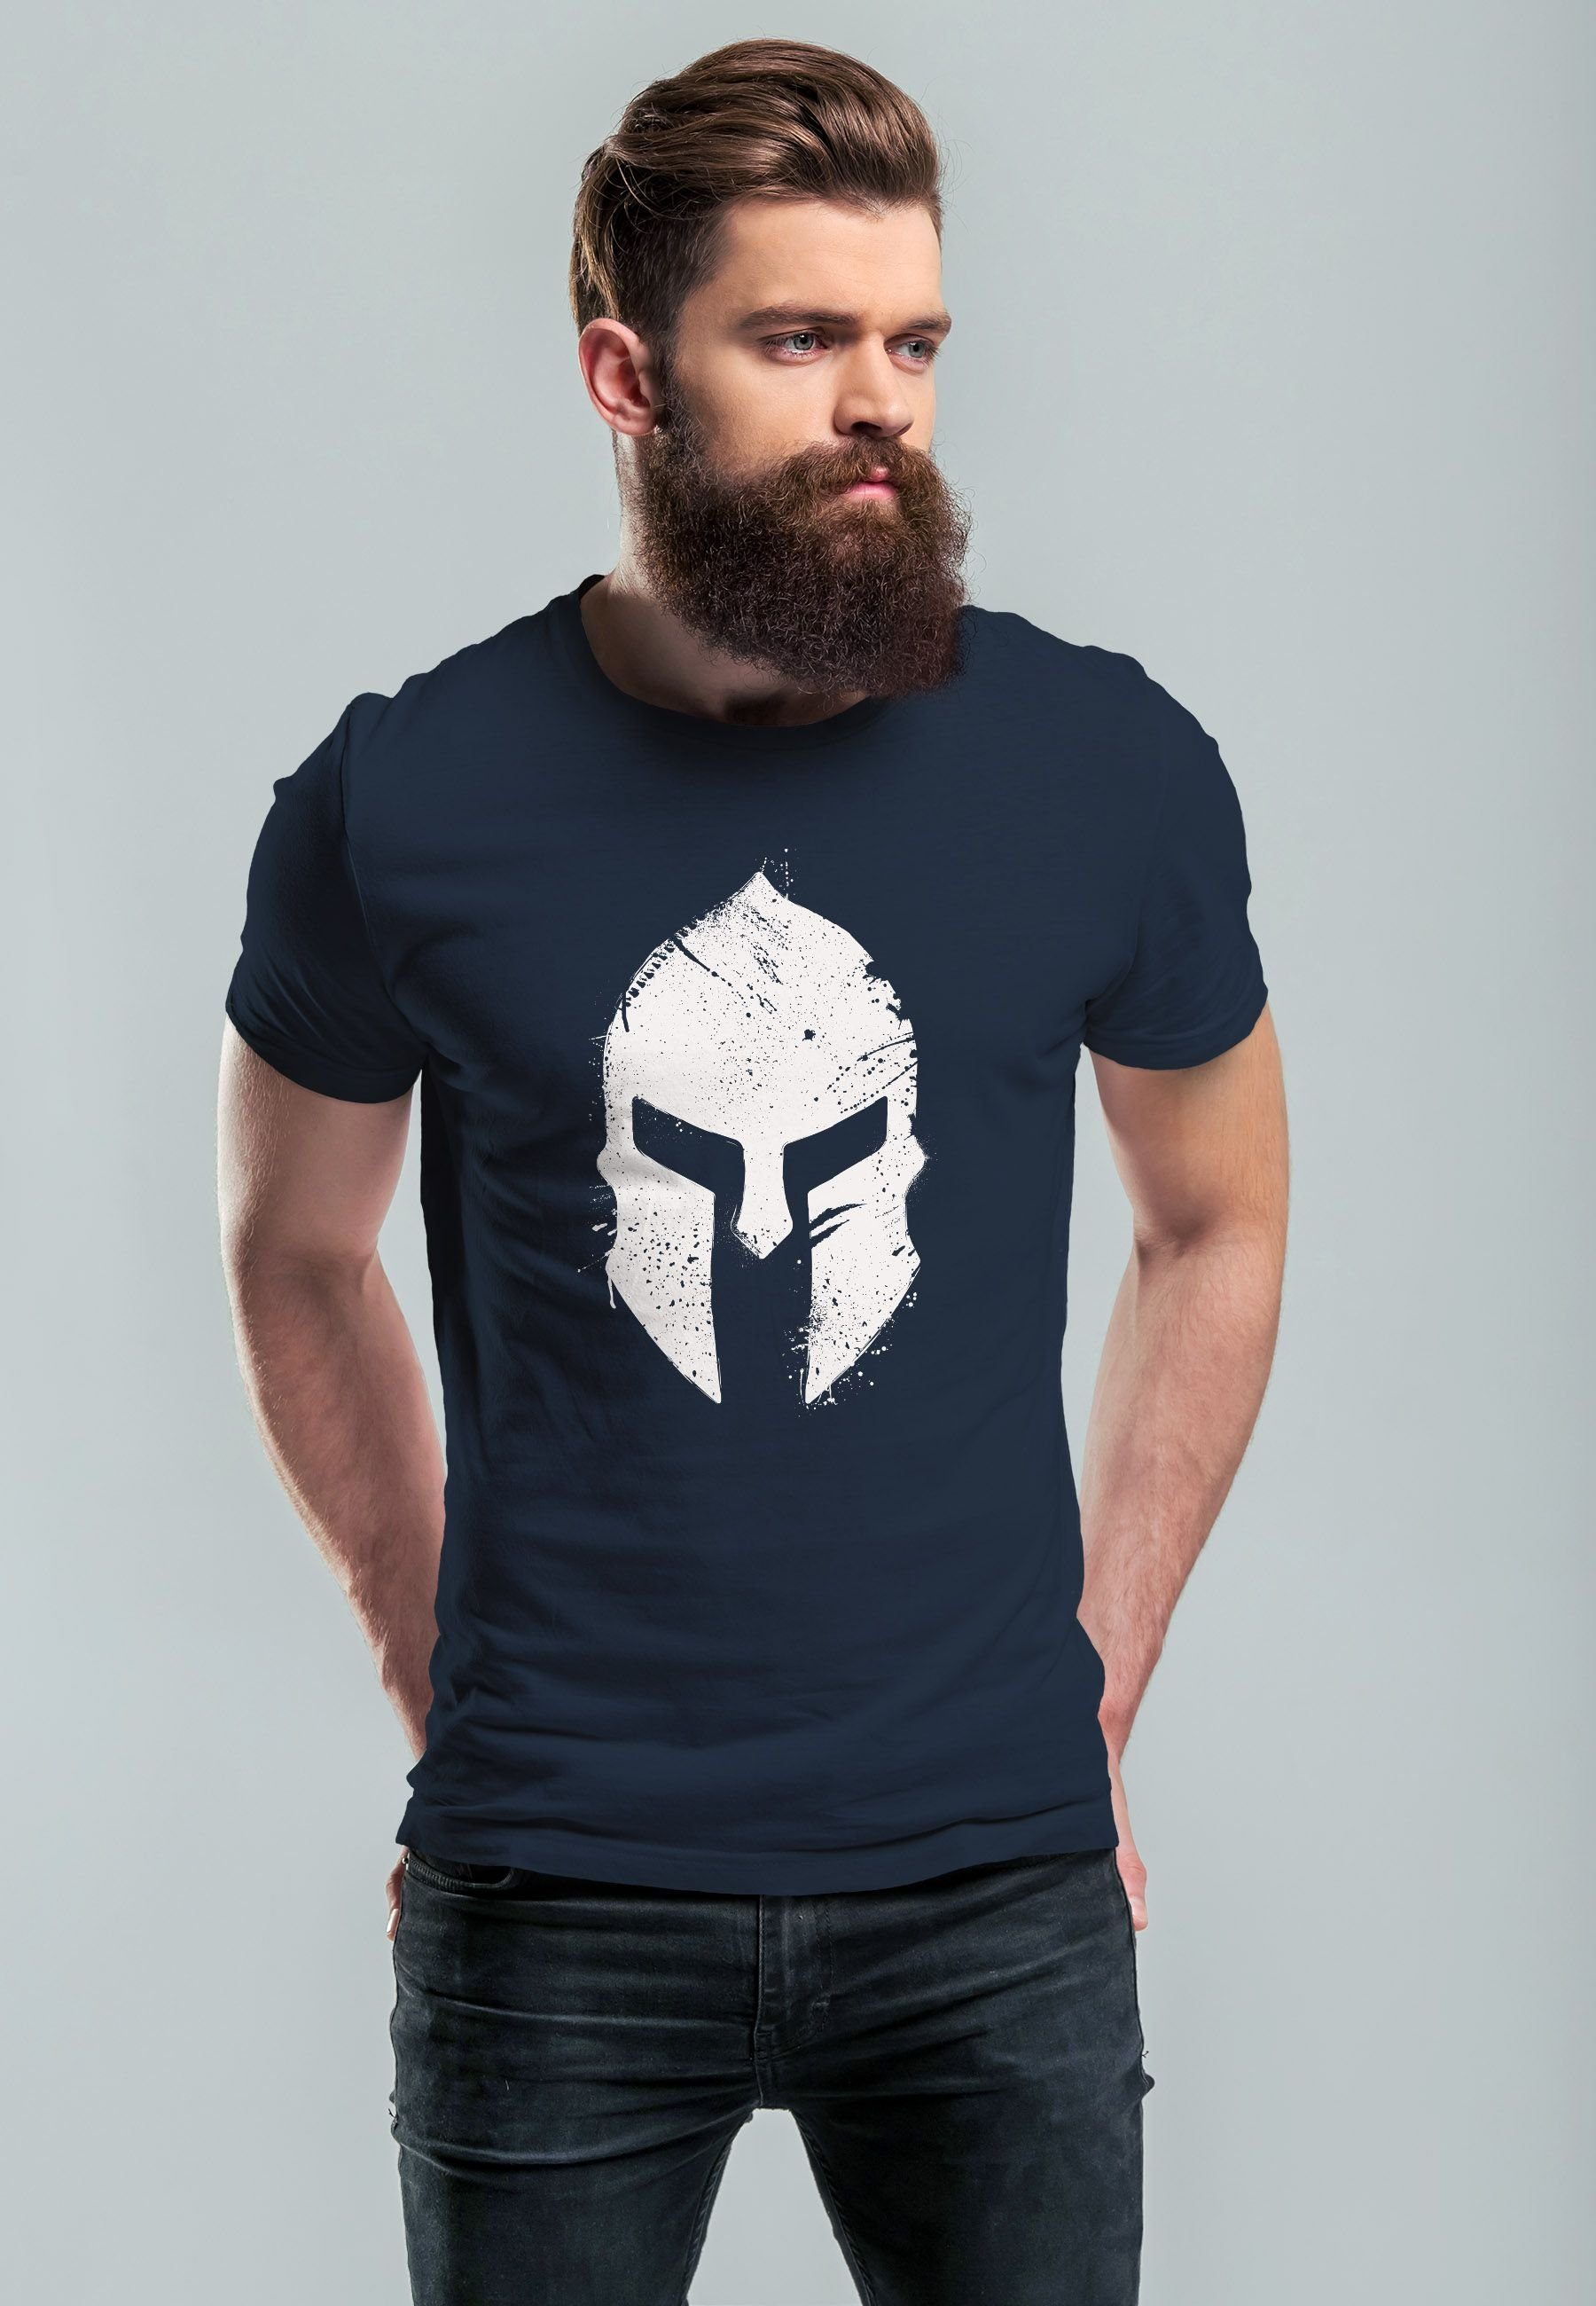 Print T-Shirt Aufdruck Sparta-Helm Neverless Print Krieger Herren Print-Shirt Sp Warrior mit Gladiator navy